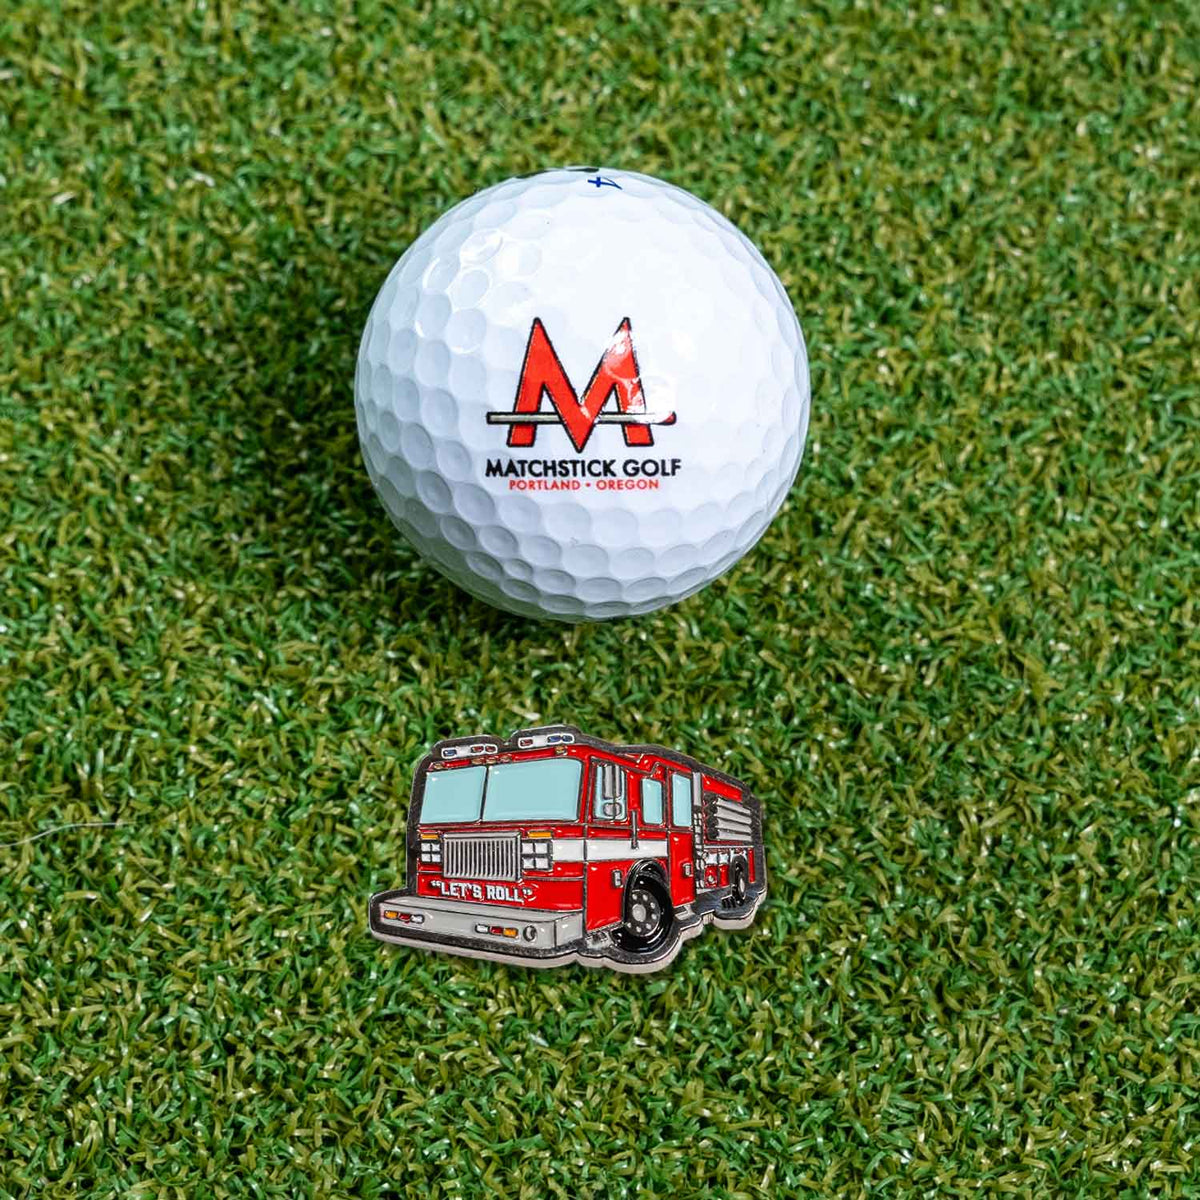 fire truck engine golf ball marker on grass with ball